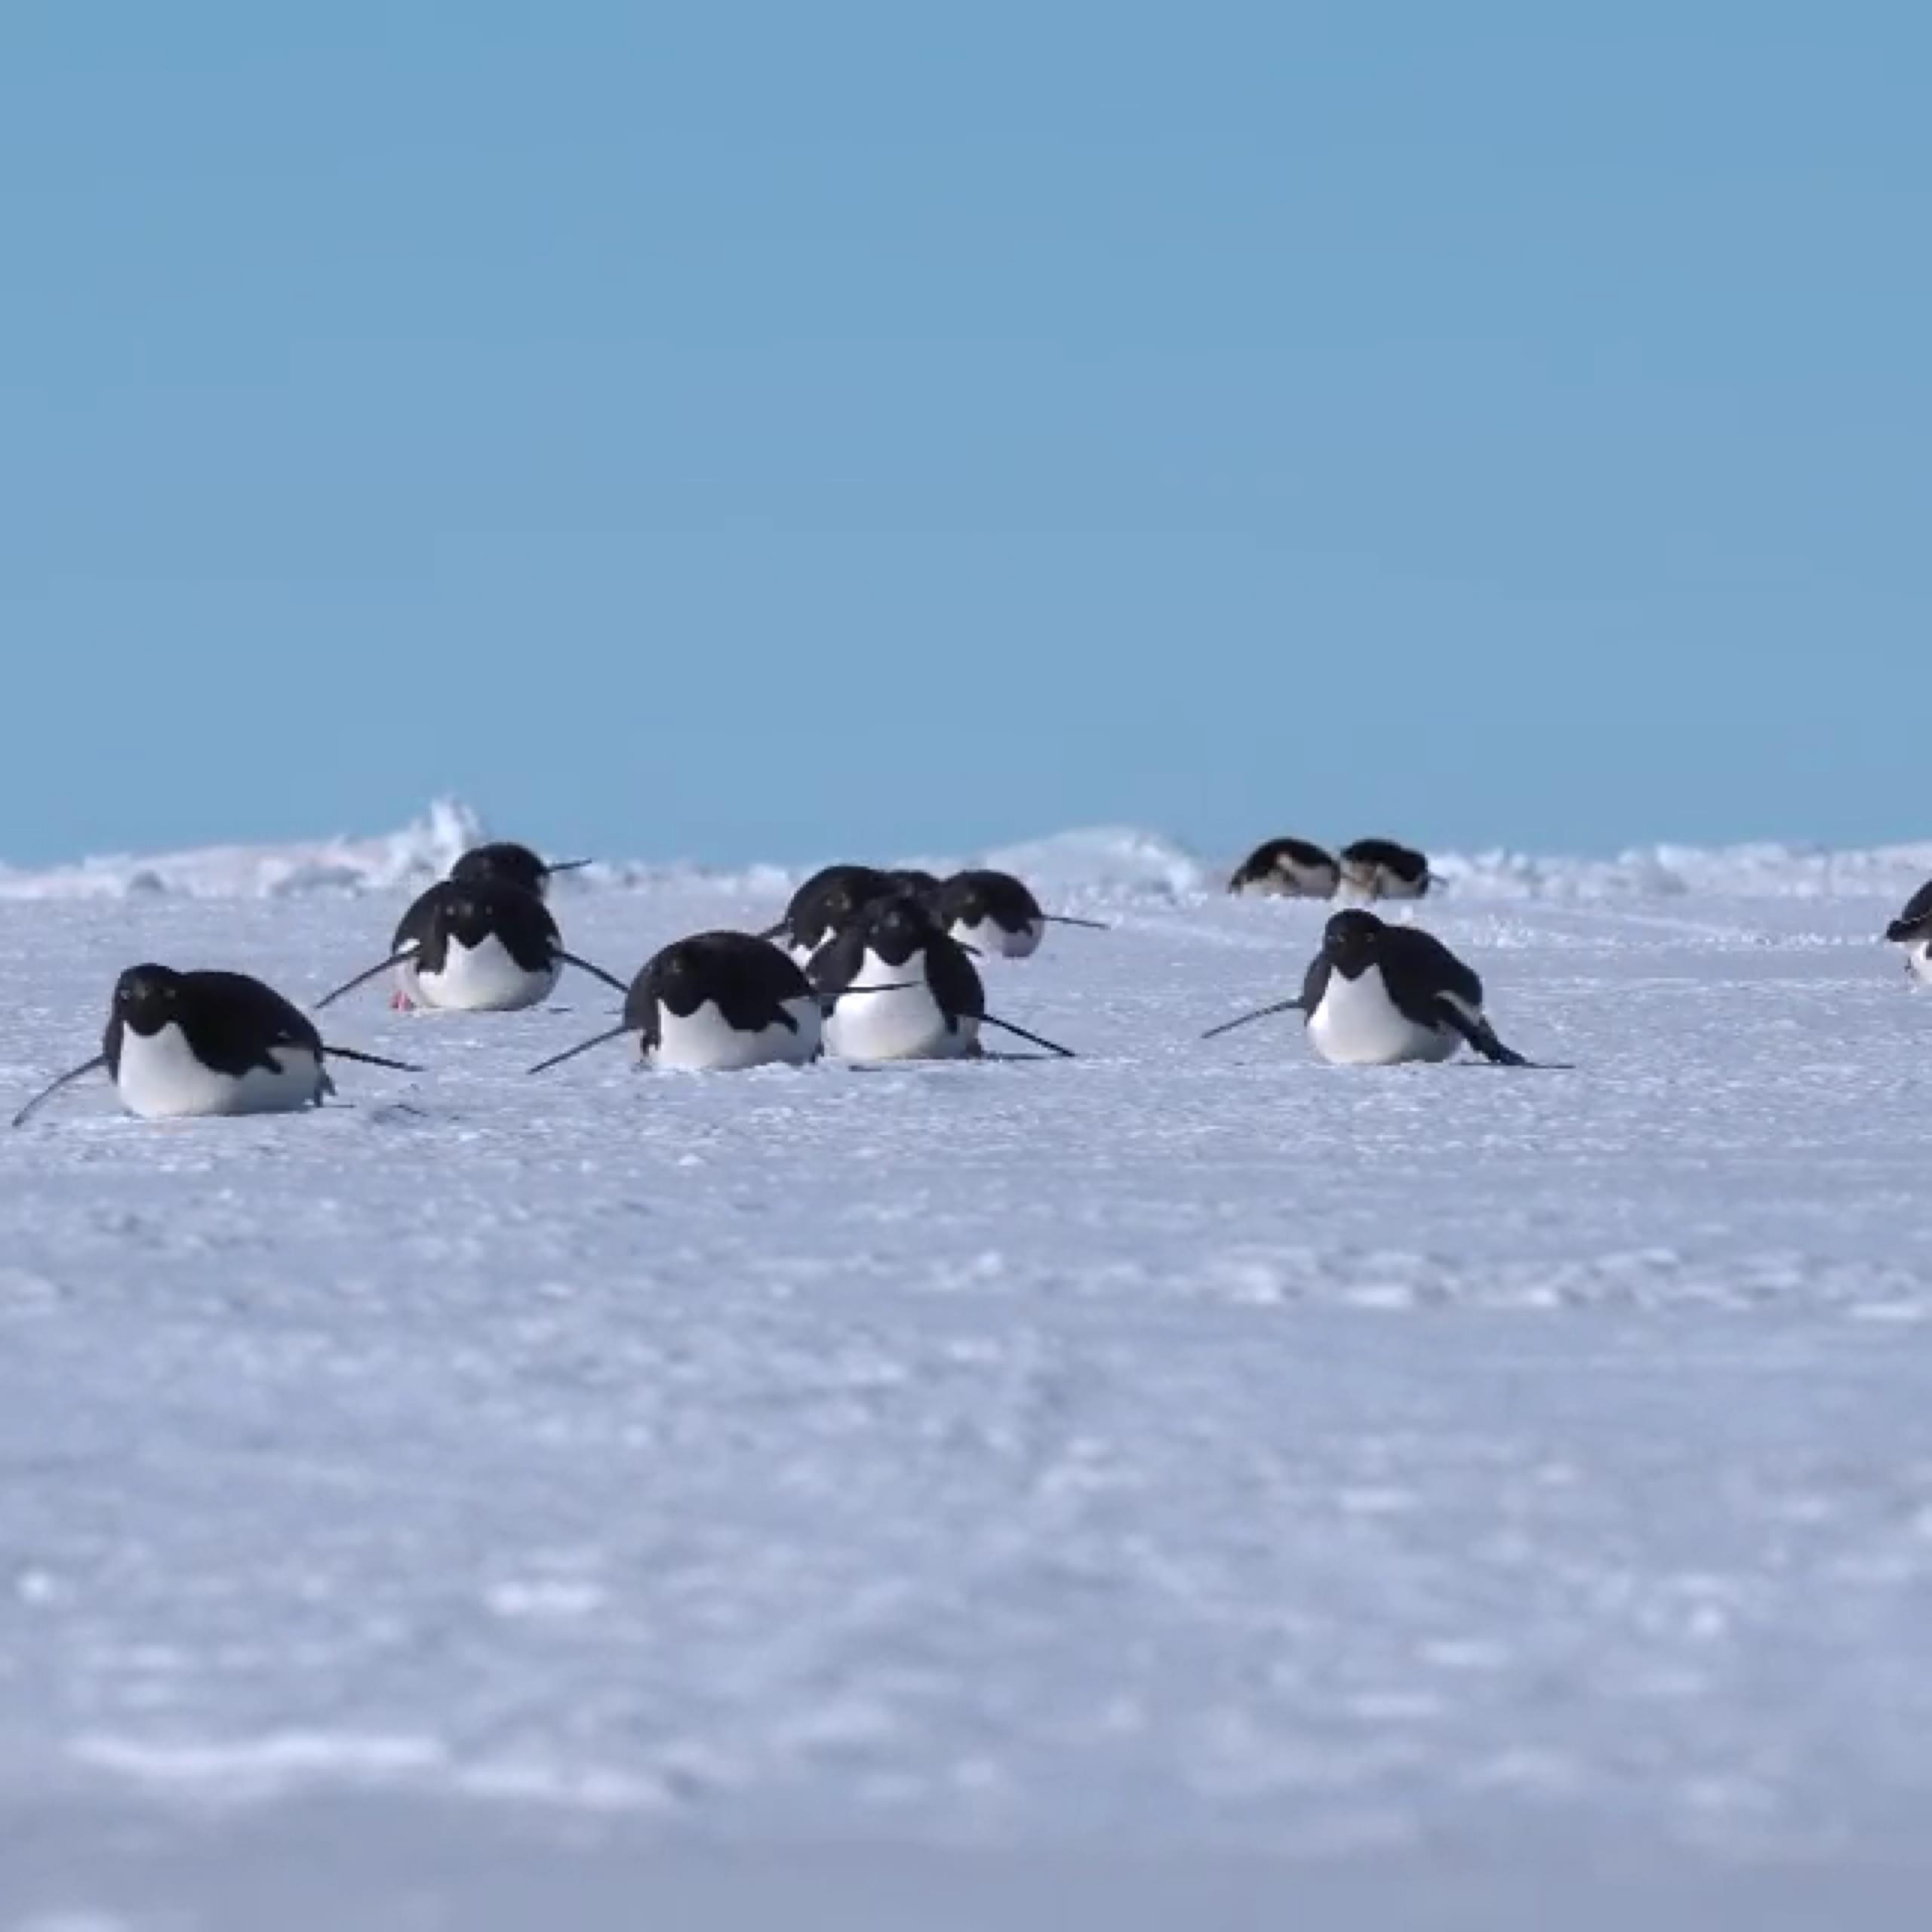 慢镜头下,企鹅在冰面上滑行